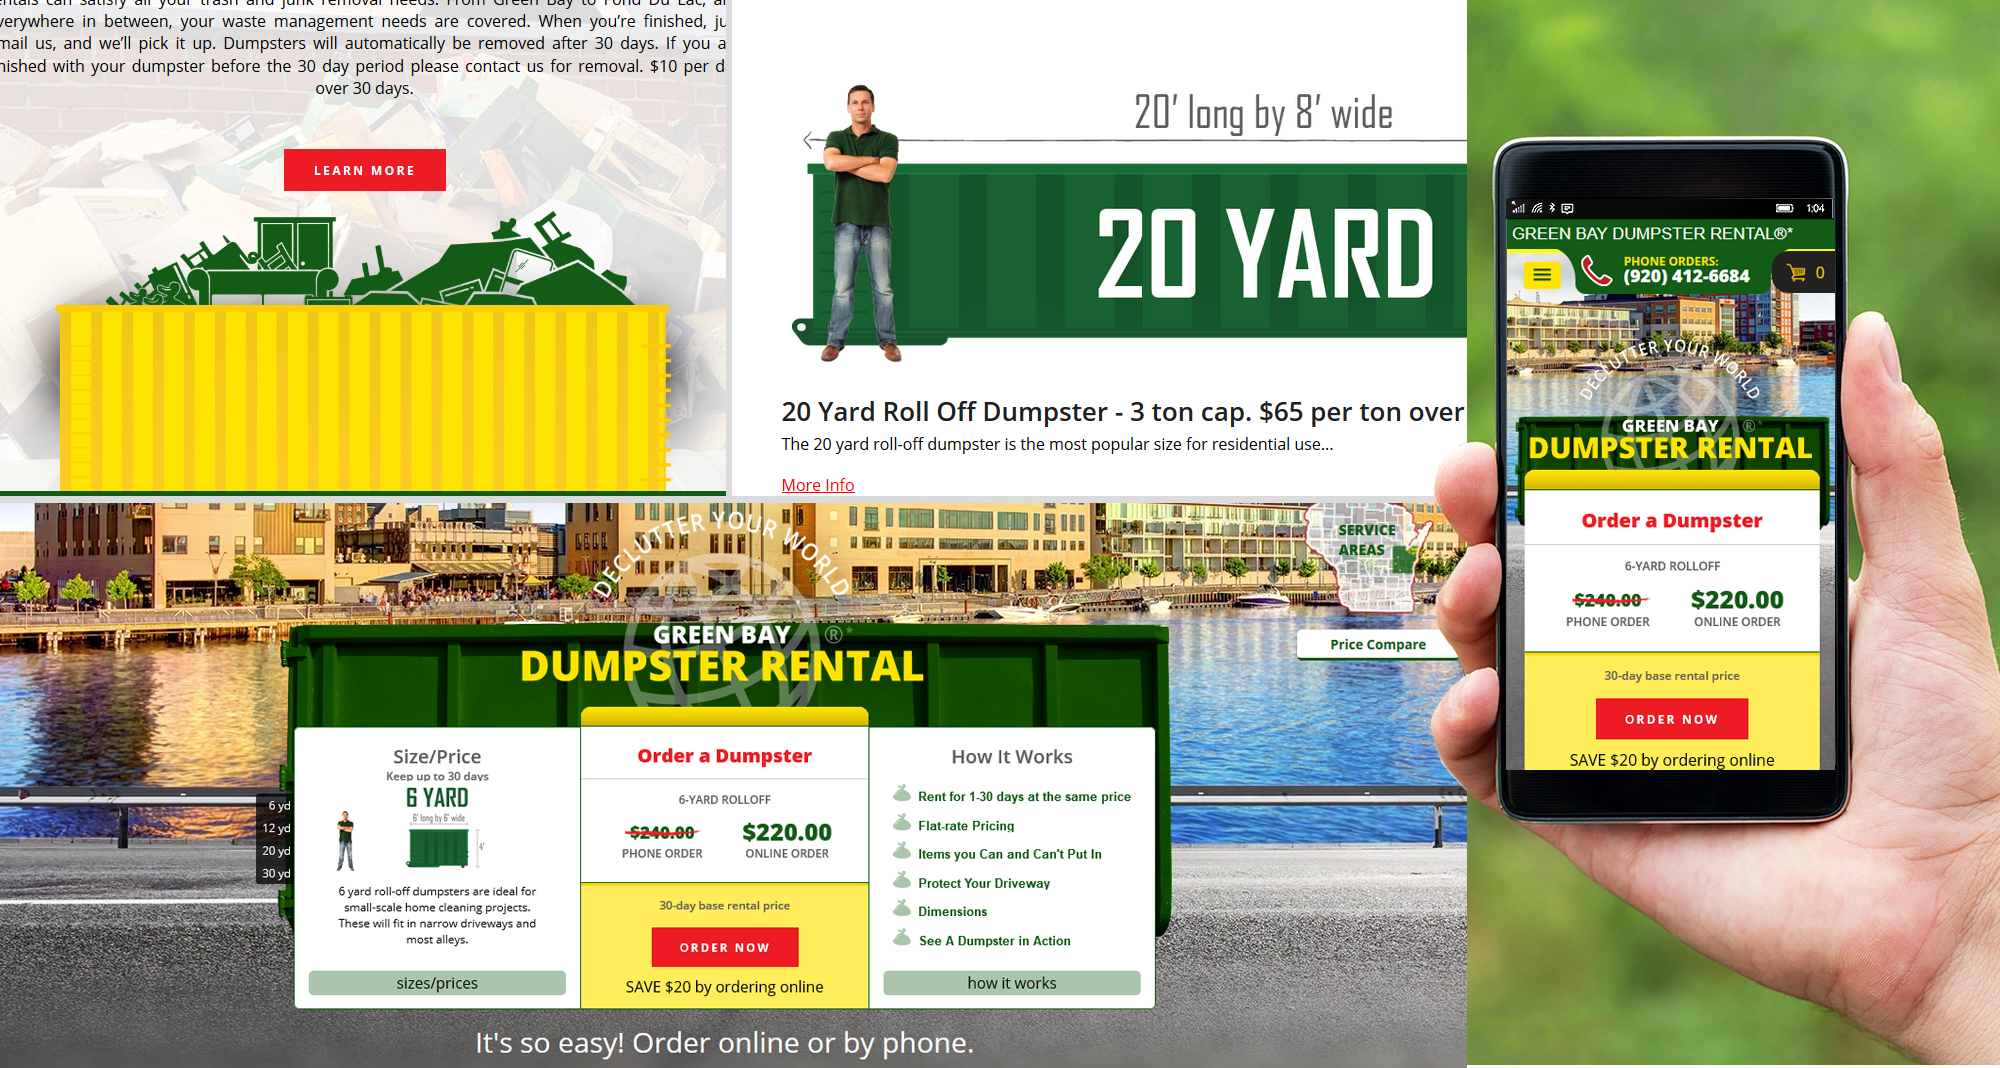 Dumpster Rental Website Design